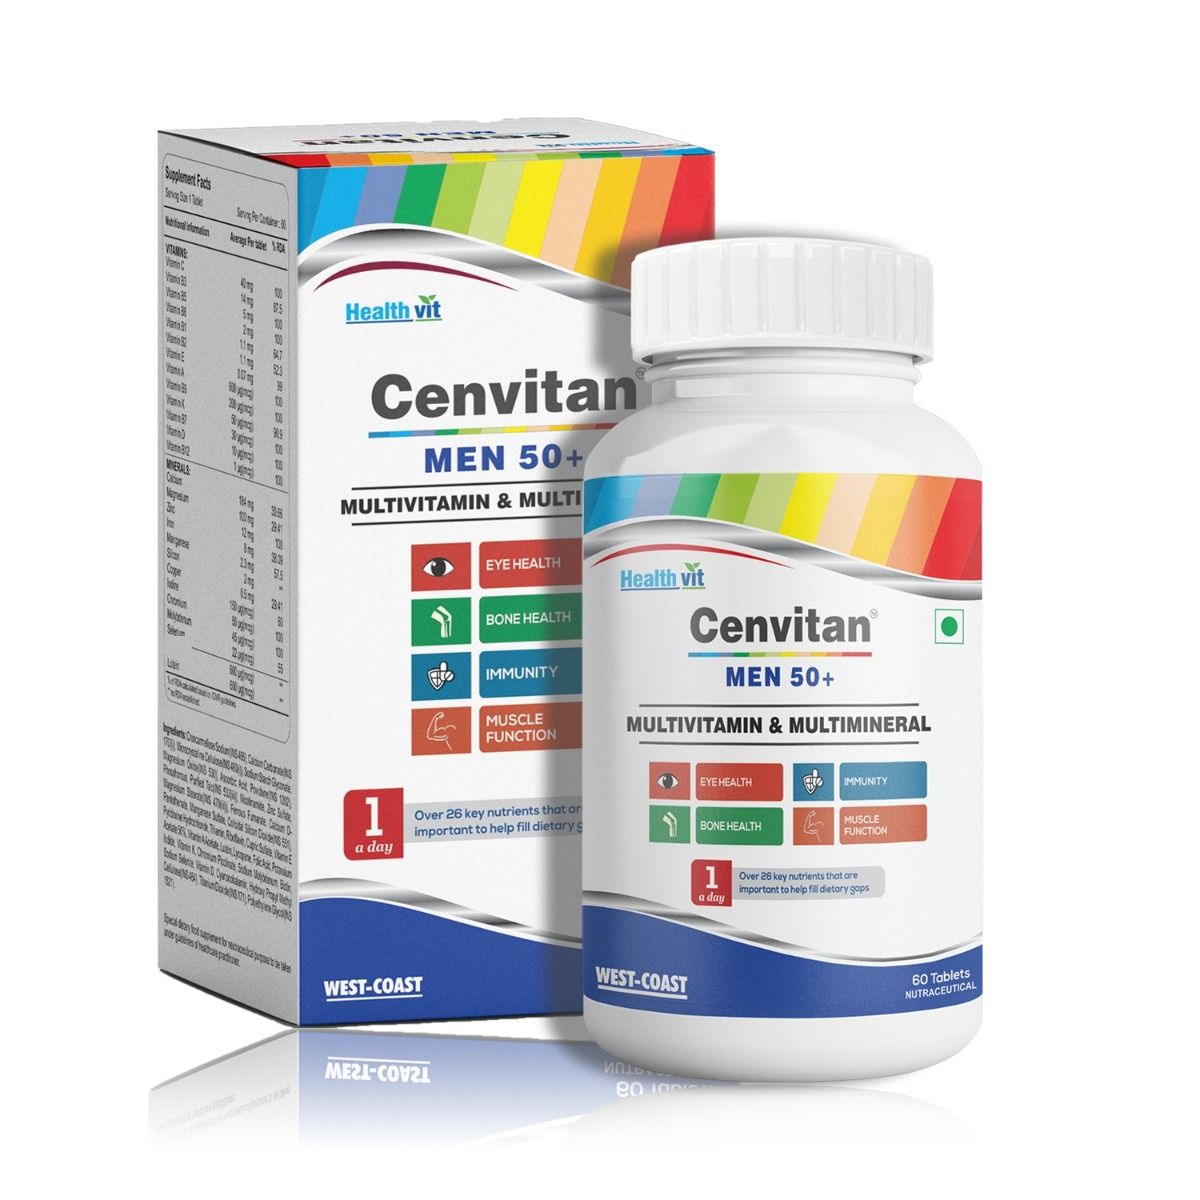 Buy Healthvit Cenvitan Men 50+ Multivitamins & Multimineral, 60 Tablets Online